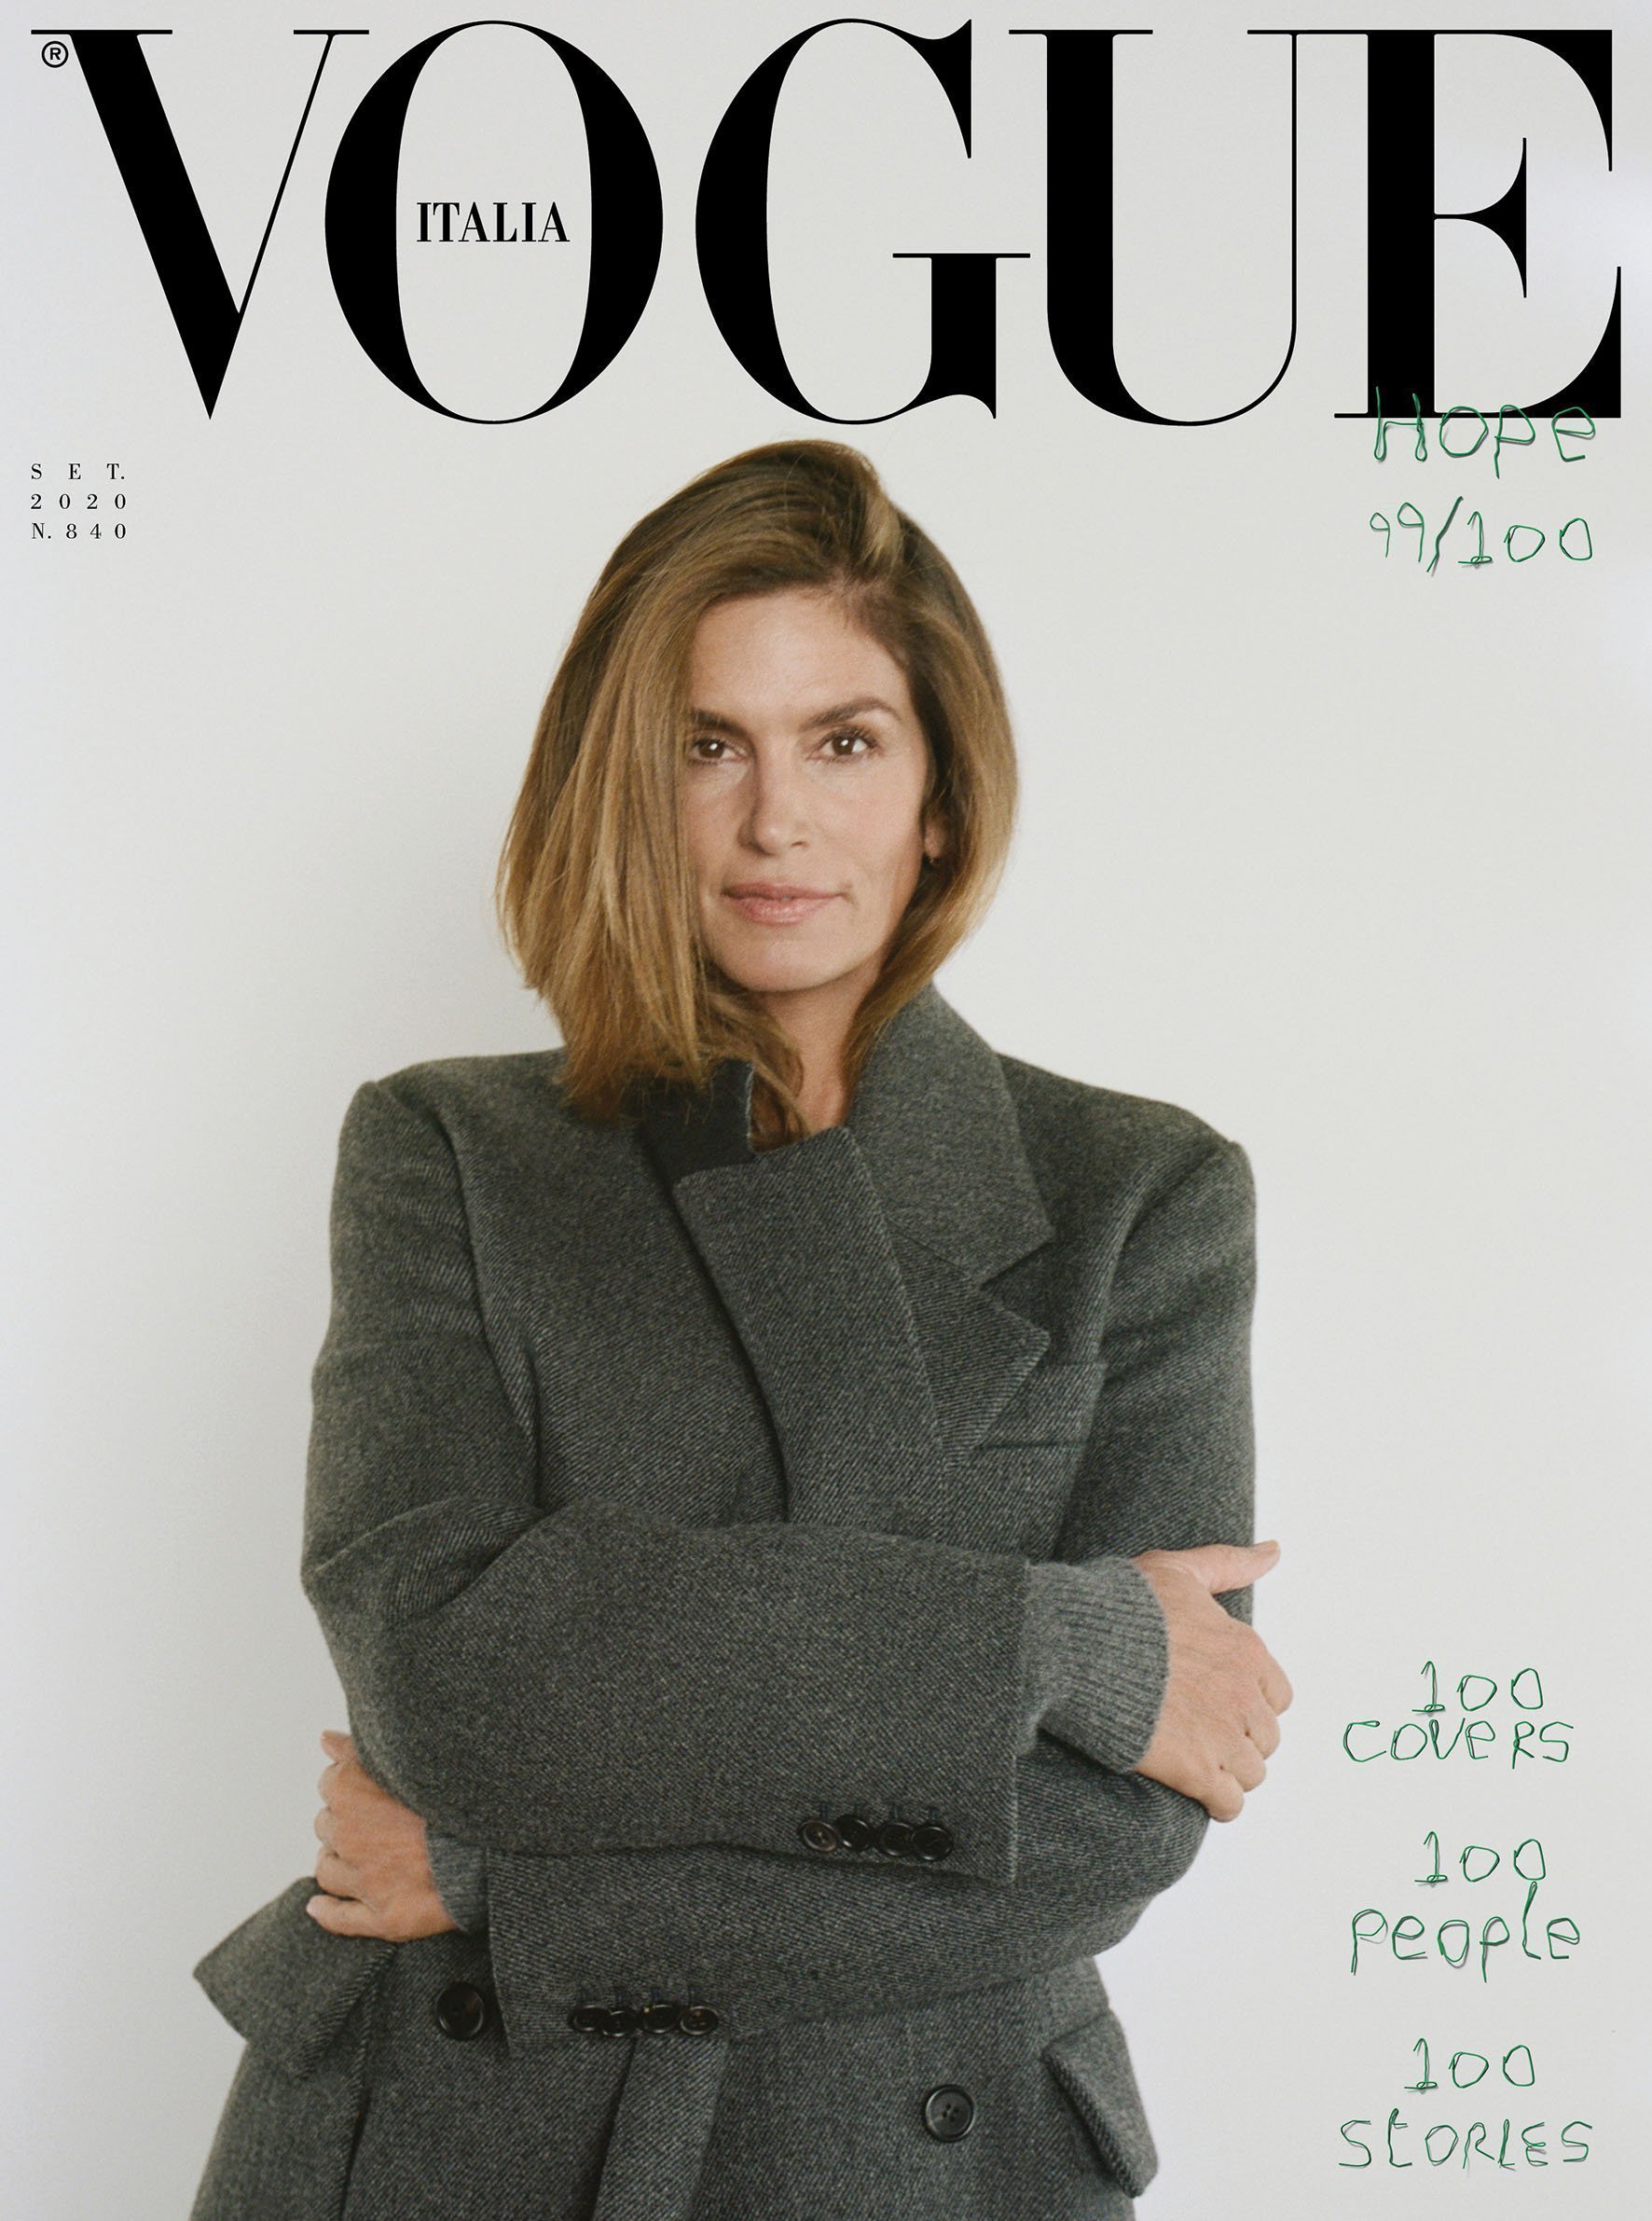 Vogue Italia 100